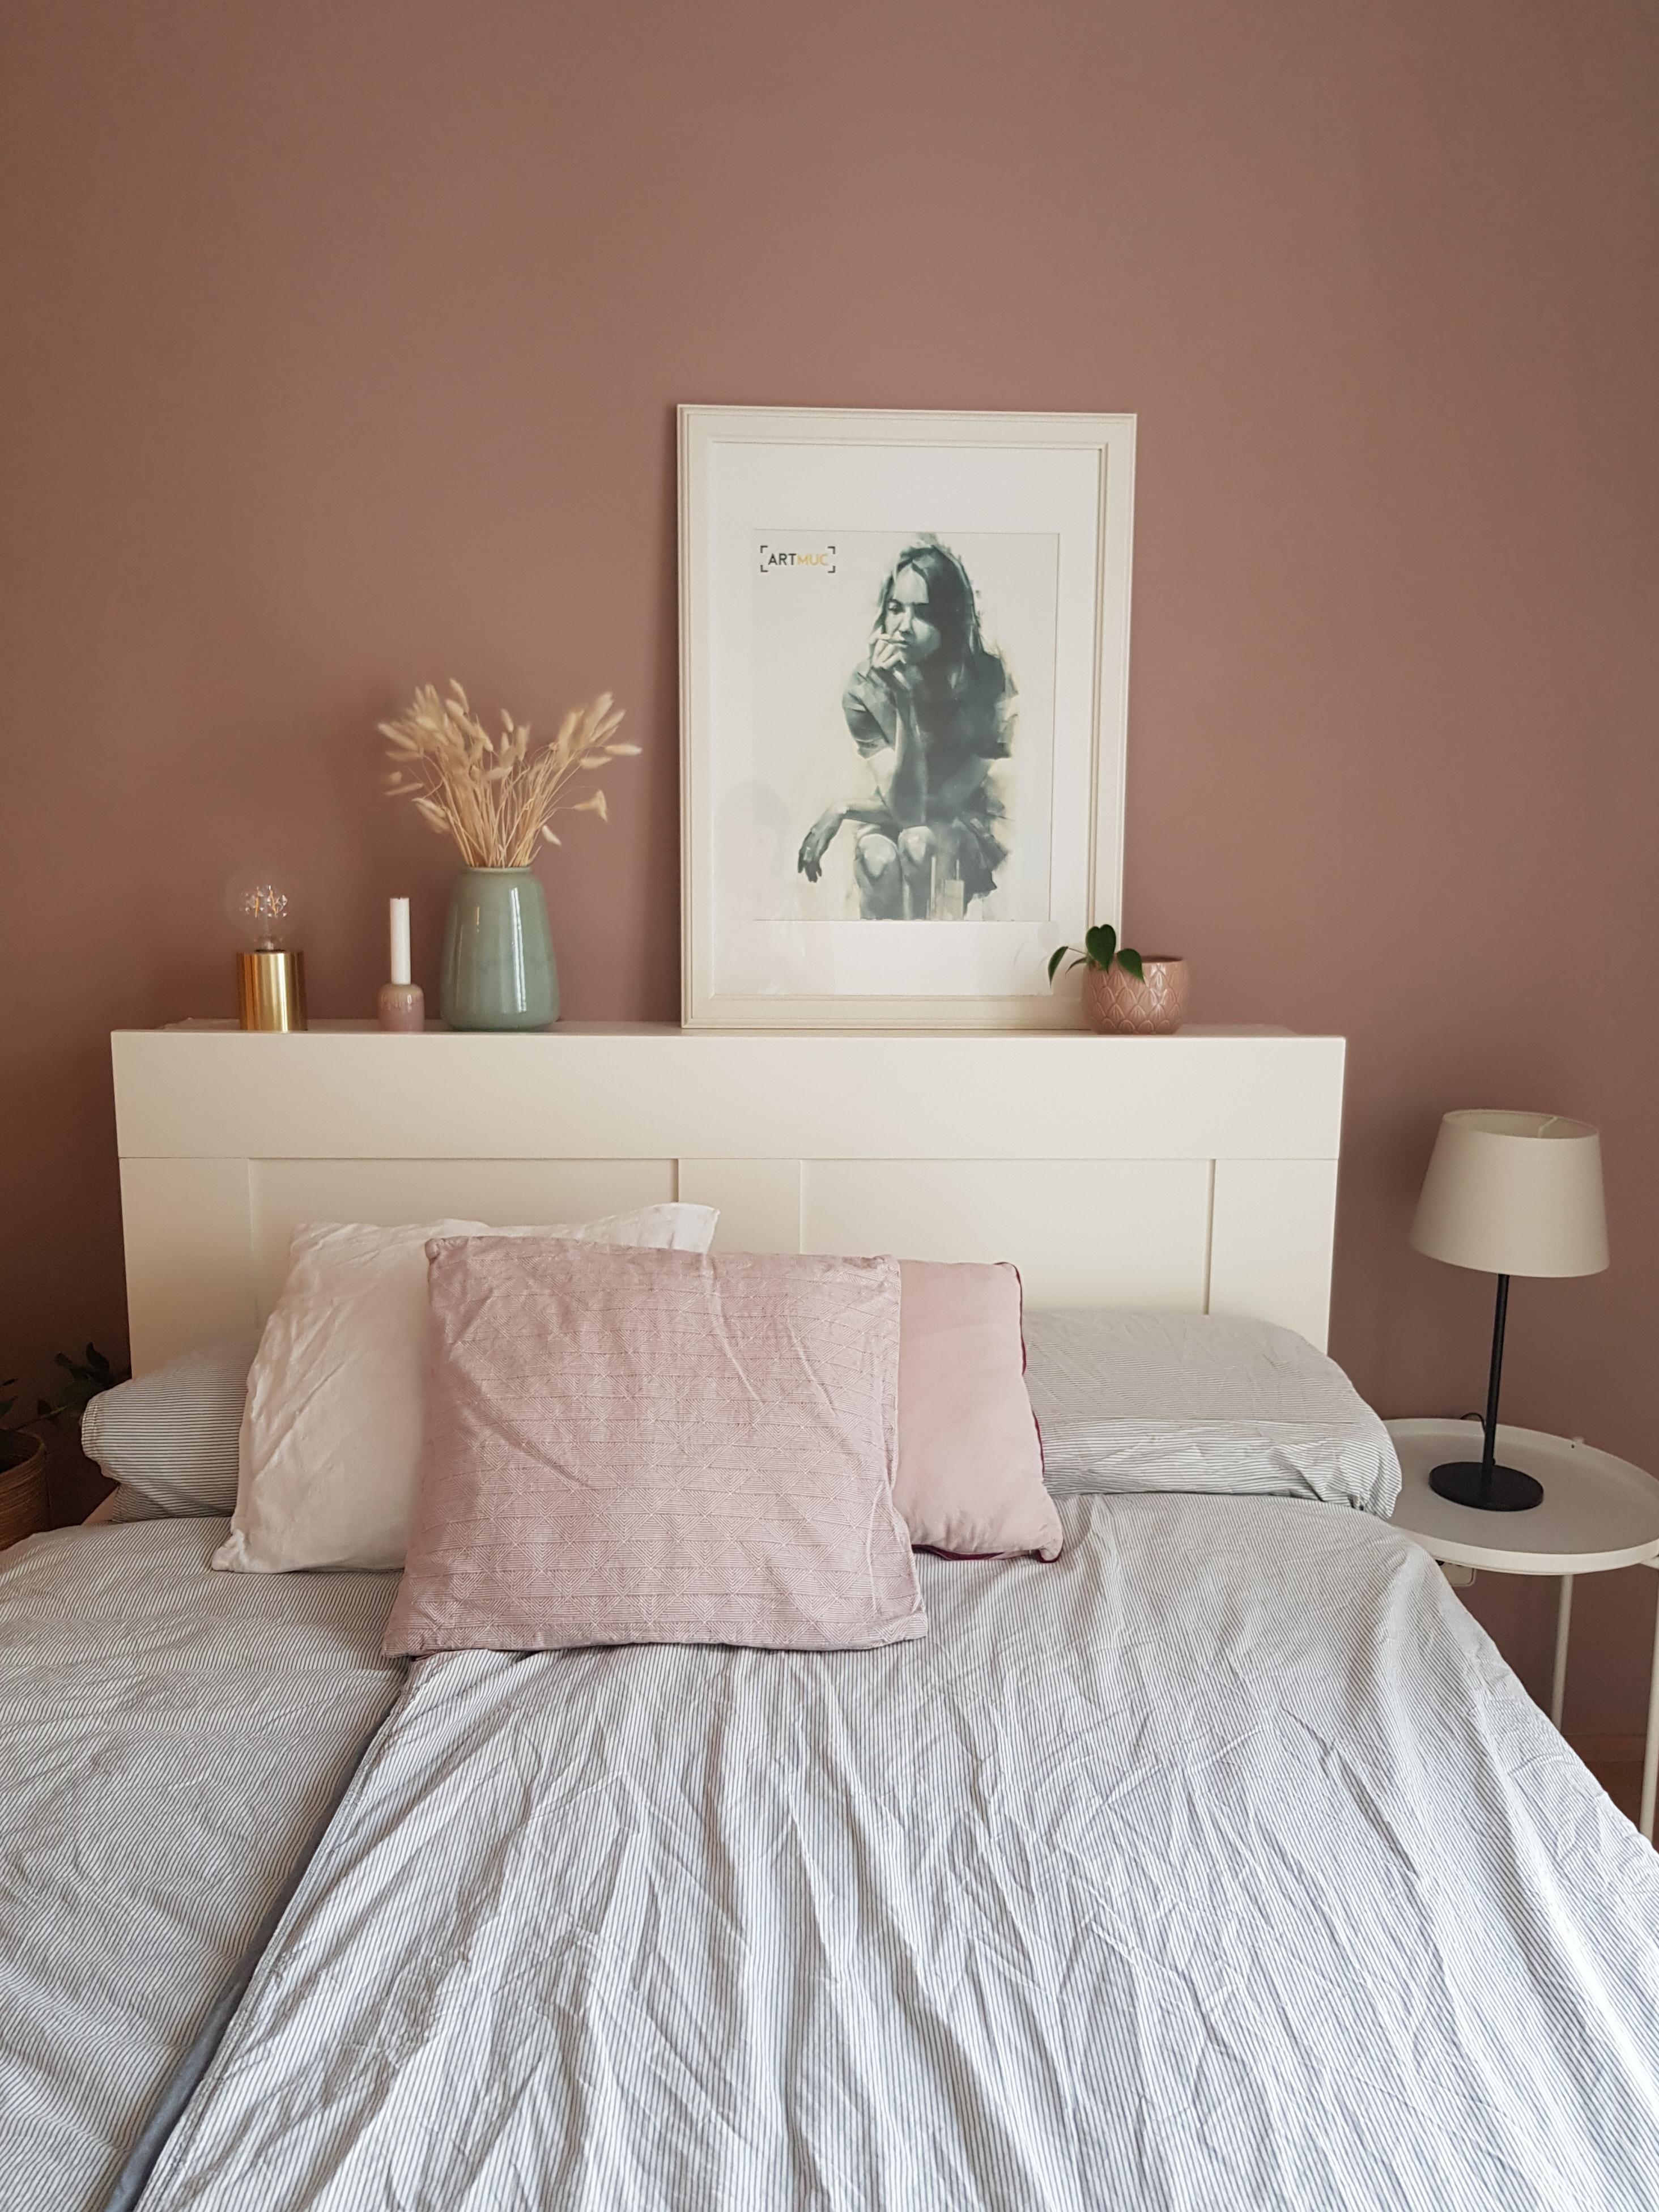 Endlich hat das Bett auch ein Kopfteil (noch mehr Platz für Deko 🤭) #betthaupt #wandfarbe #schlafzimmer #bett 